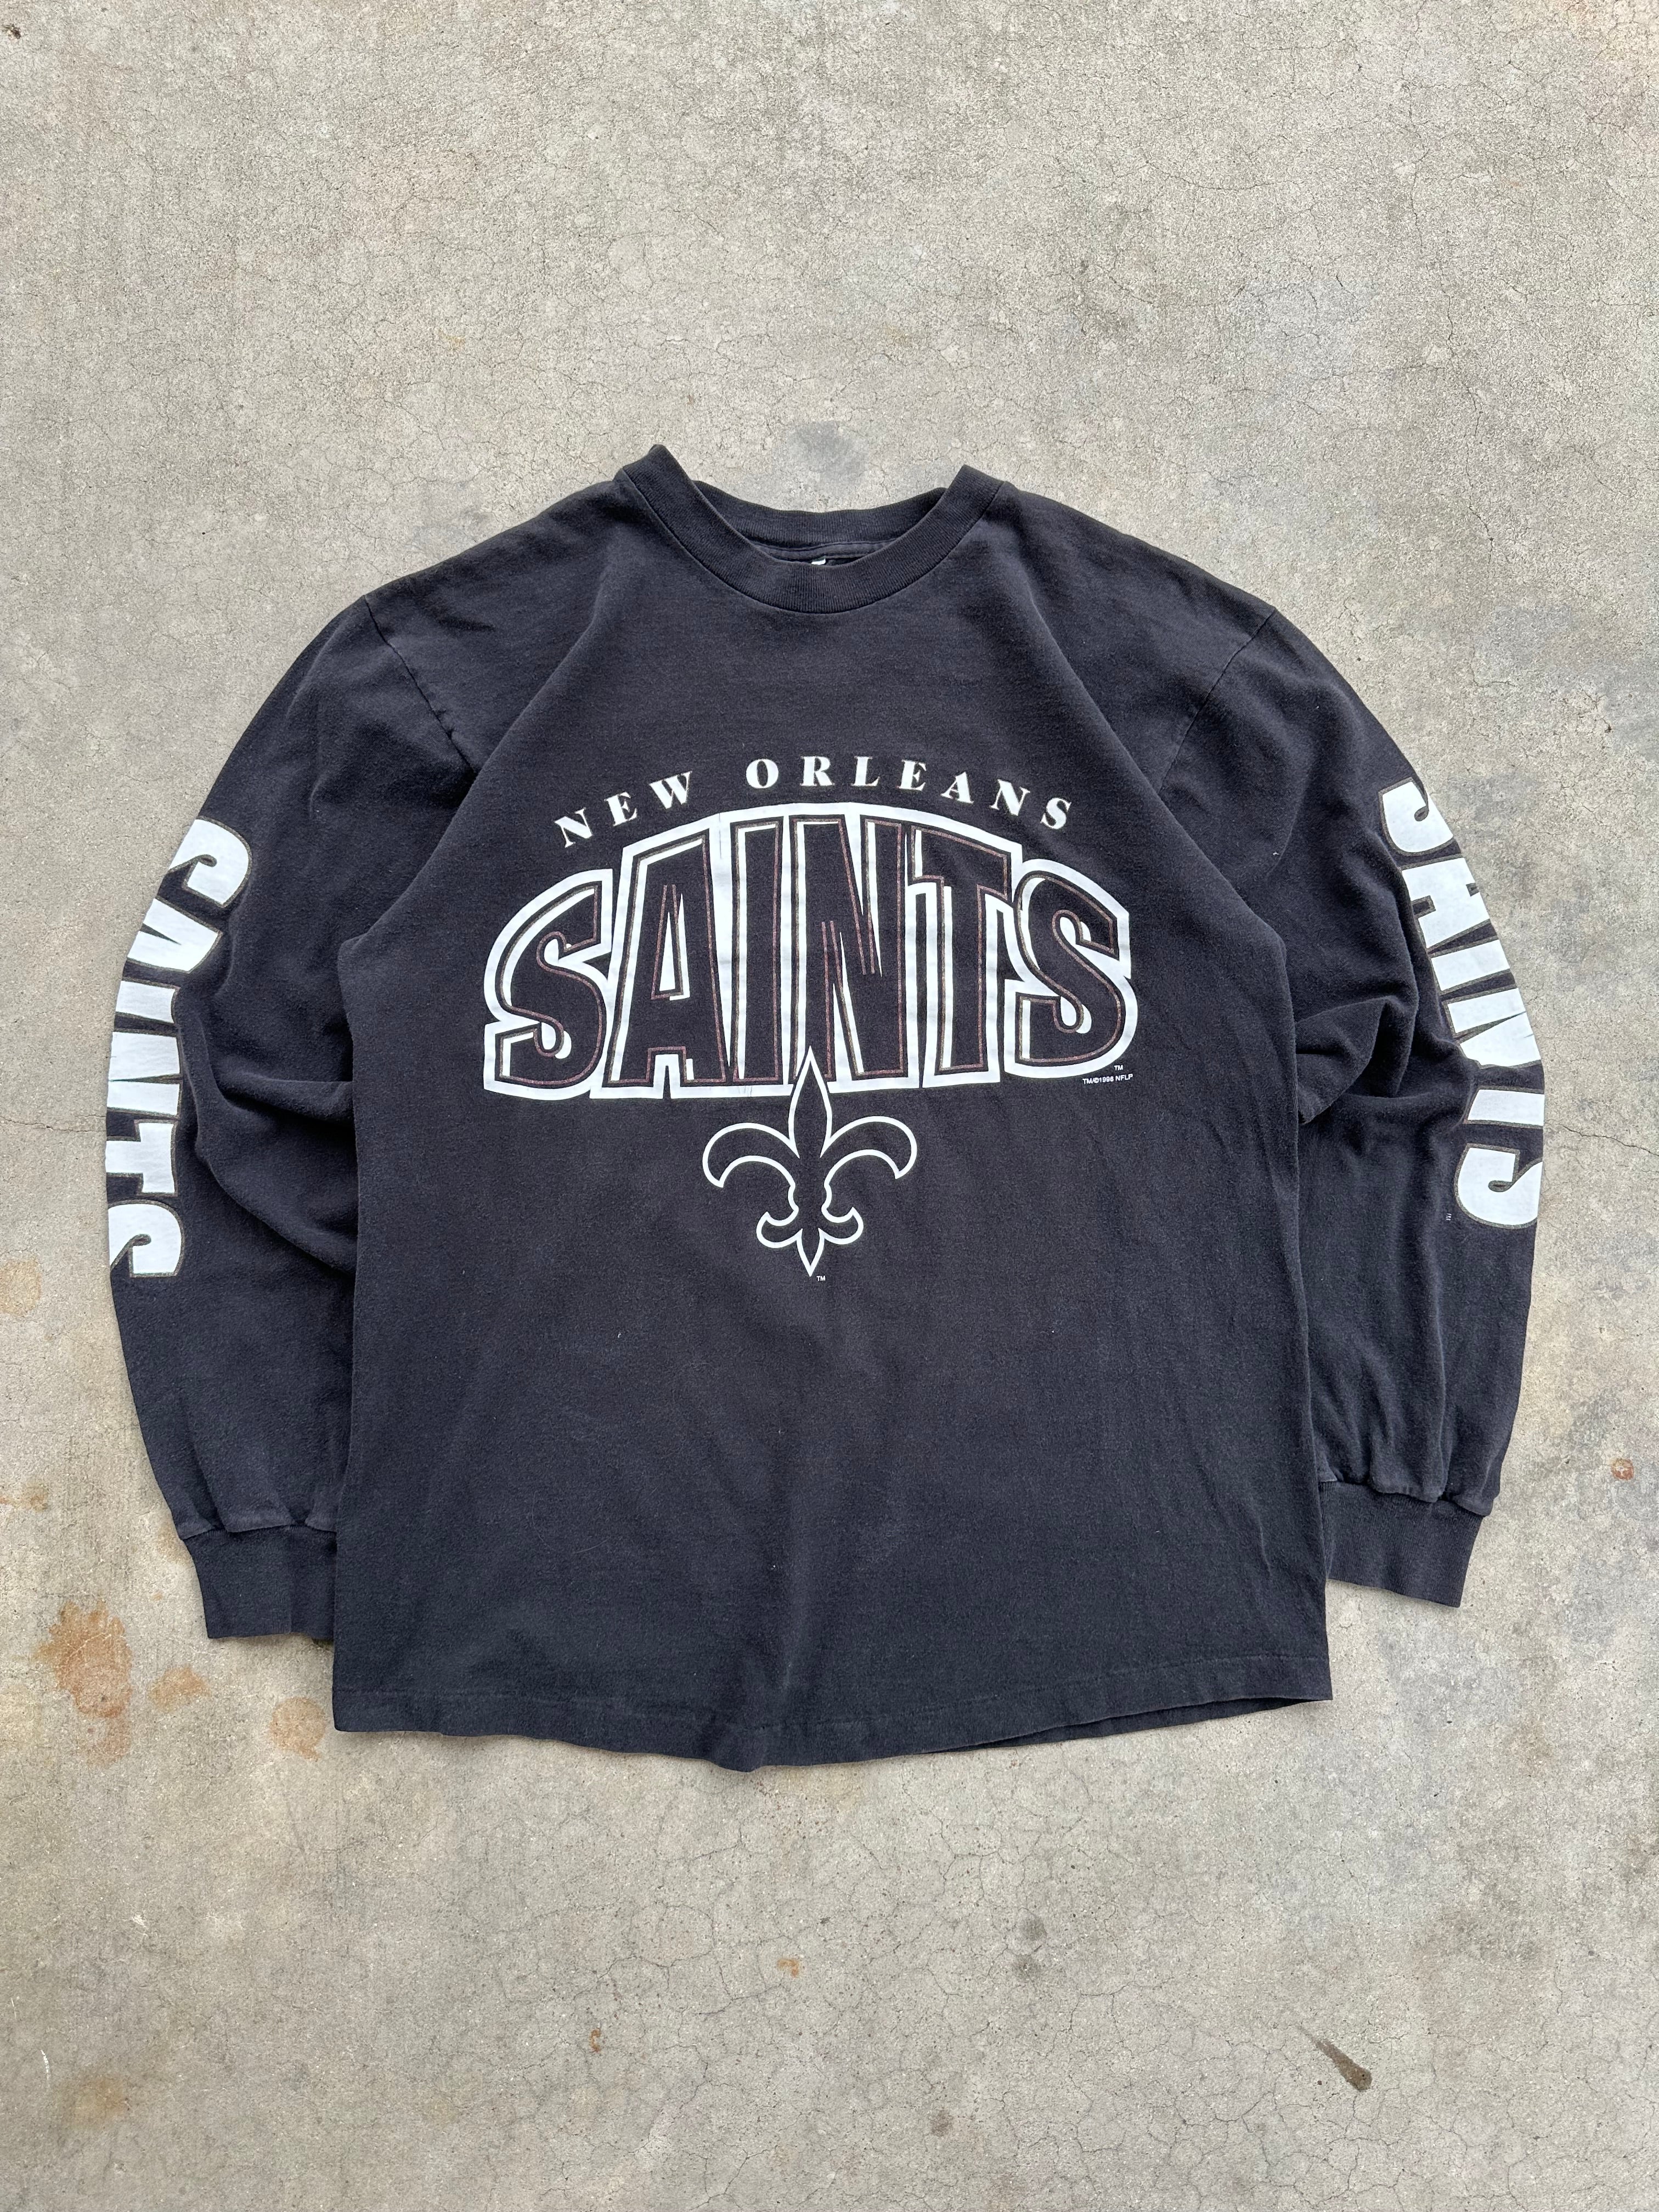 1996 New Orleans Saints Longsleeve T-Shirt (M/L)